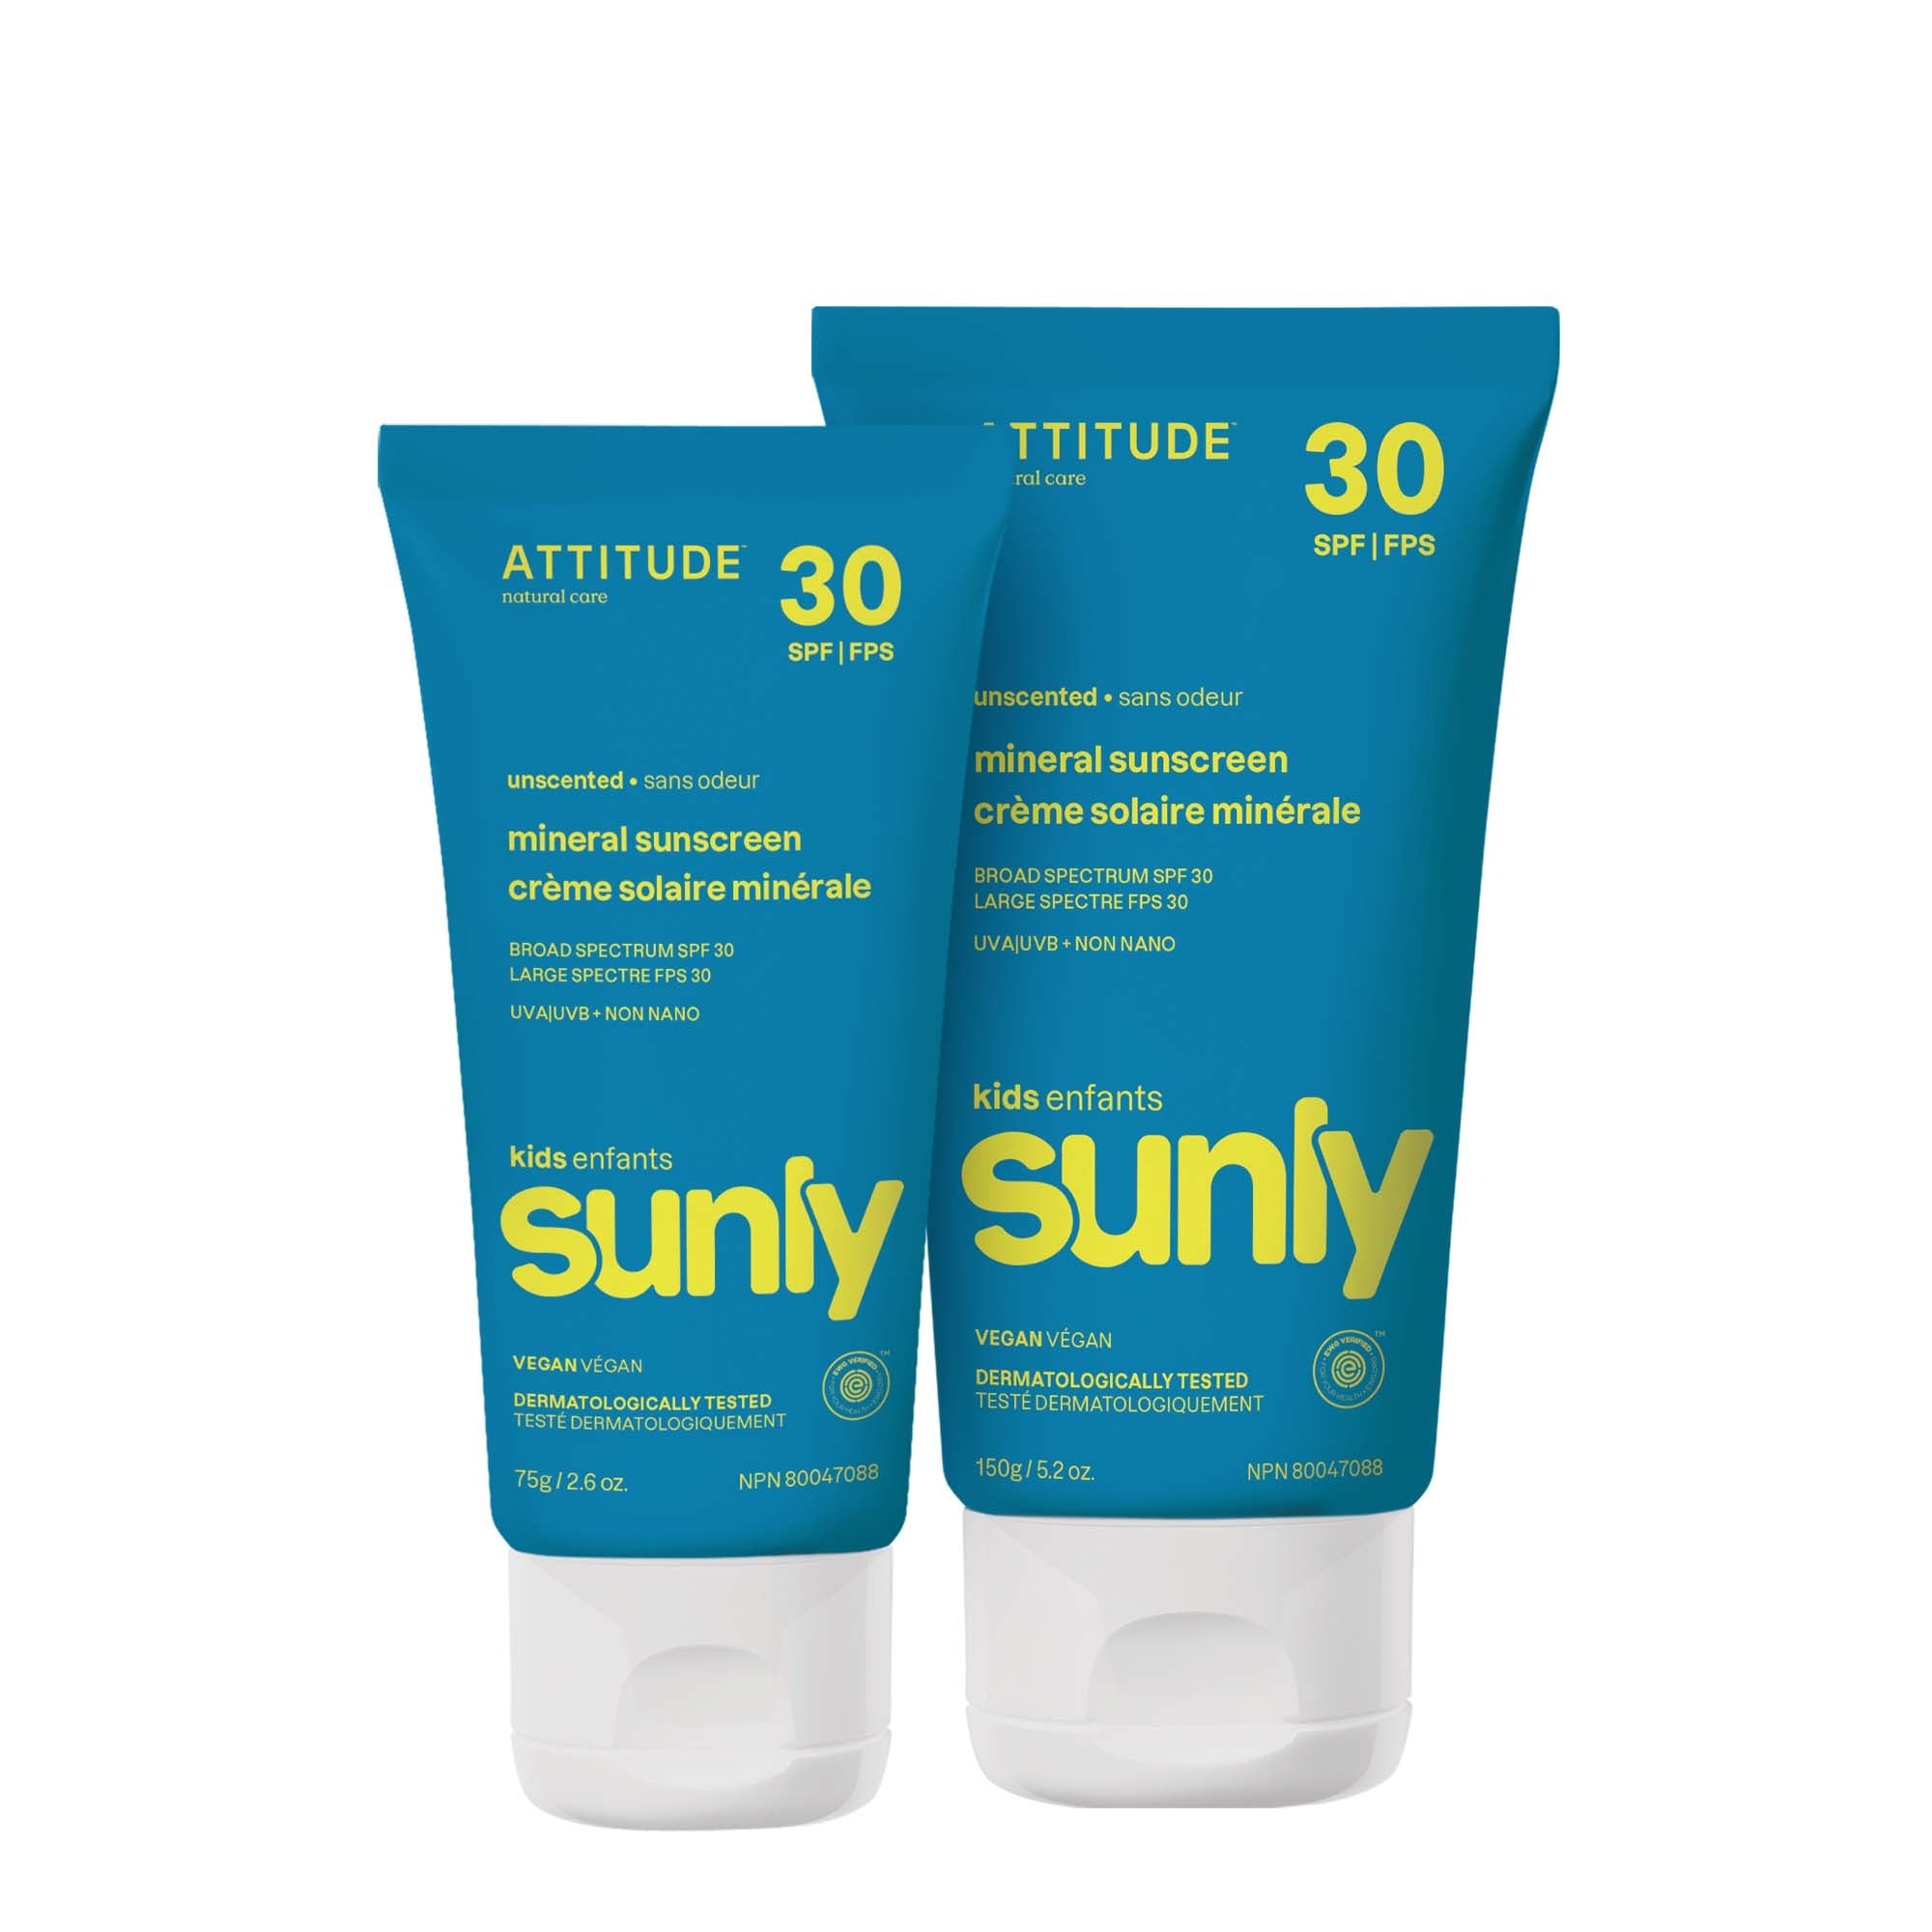 Crème solaire minérale Attitude enfants formats 75g et 150g